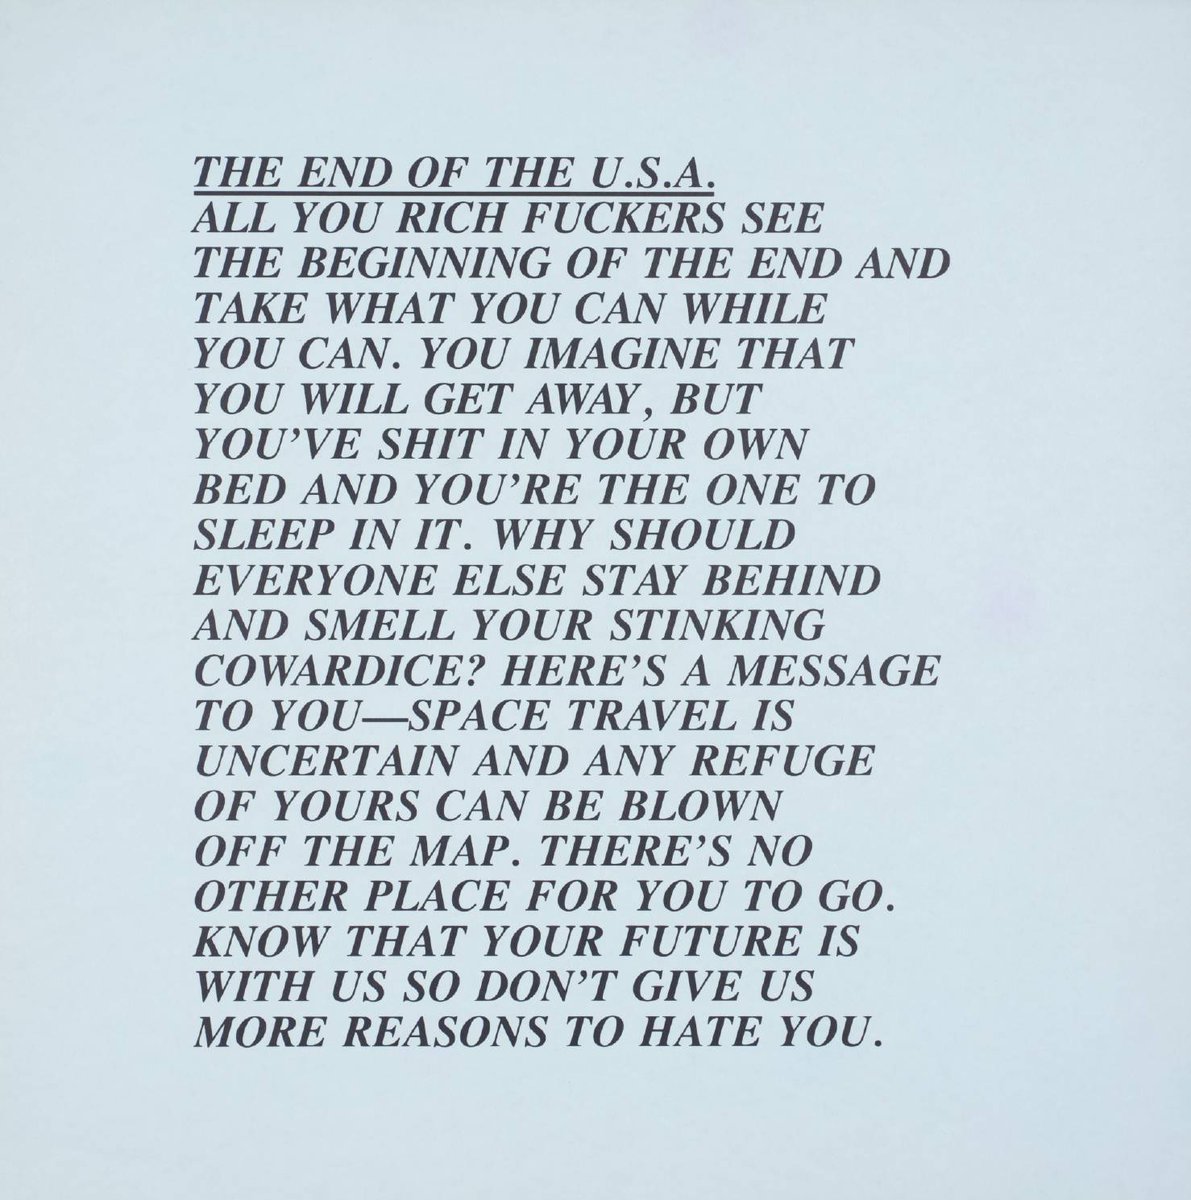 RT @TateArtBot: Jenny Holzer, Untitled, 1979 https://t.co/XPjJkGUNFZ #tatemuseum #museumarchive https://t.co/4U6TgIKlji